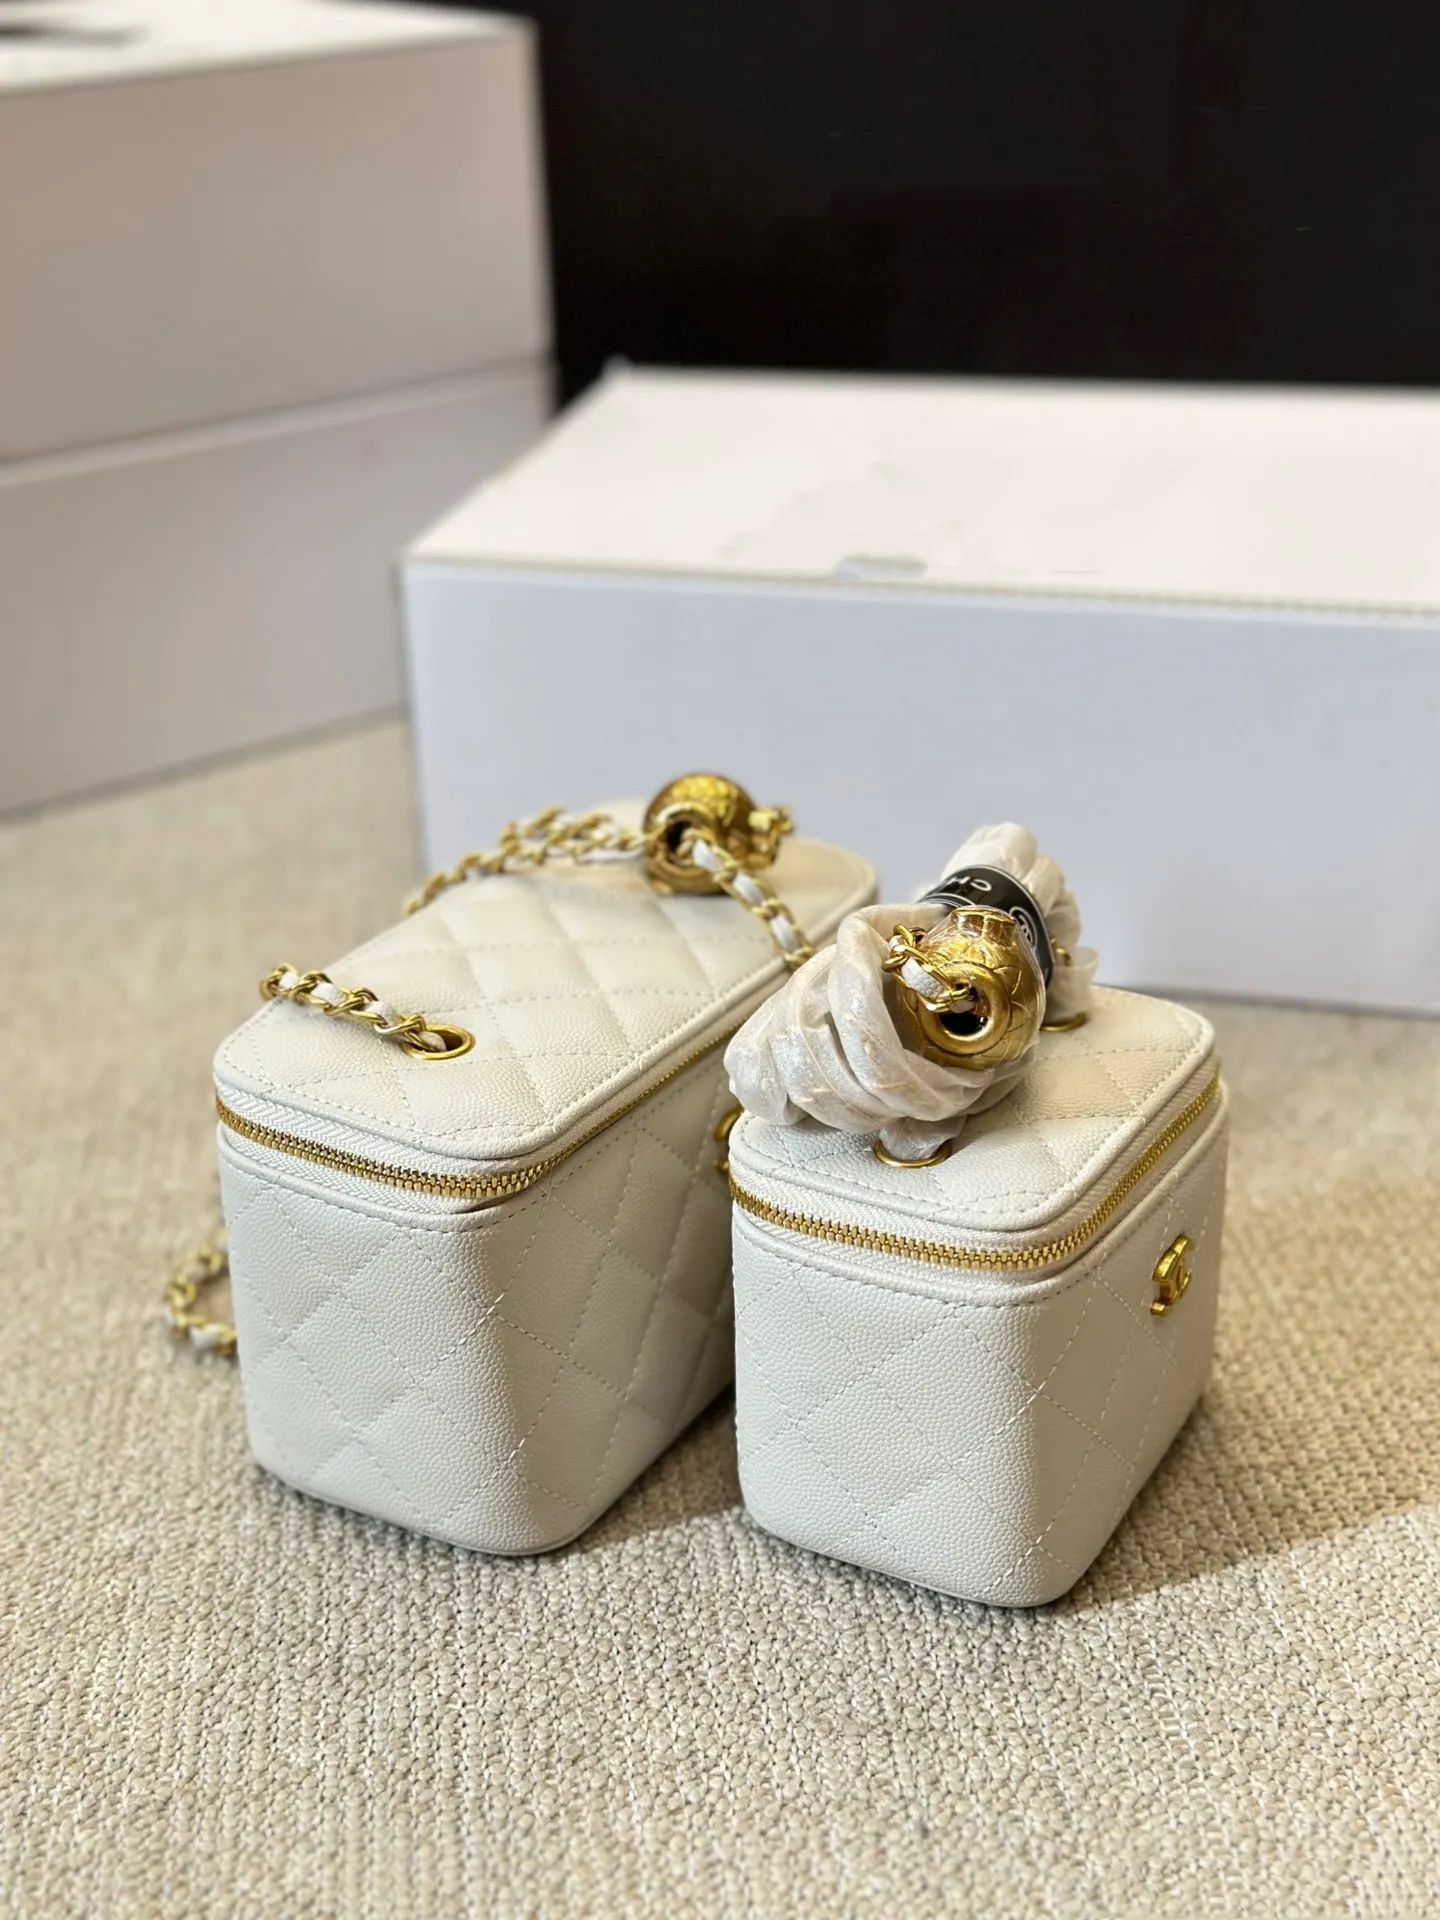 Gorąca sprzedaż luksusowe torby pudełkowe małe torebki komunikatora popularne torebki projektowe dla młodych kobiet